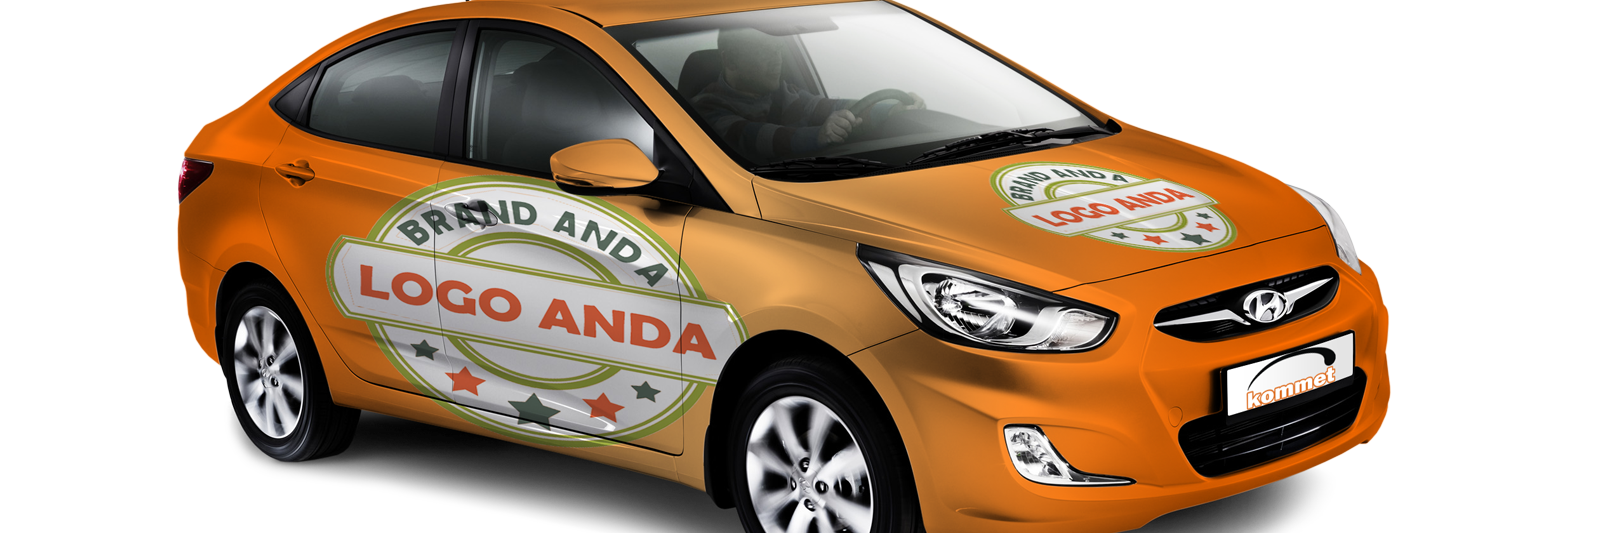 Branding Mobil Advertising Spesialis Tips Teknik Cara Memasang Stiker